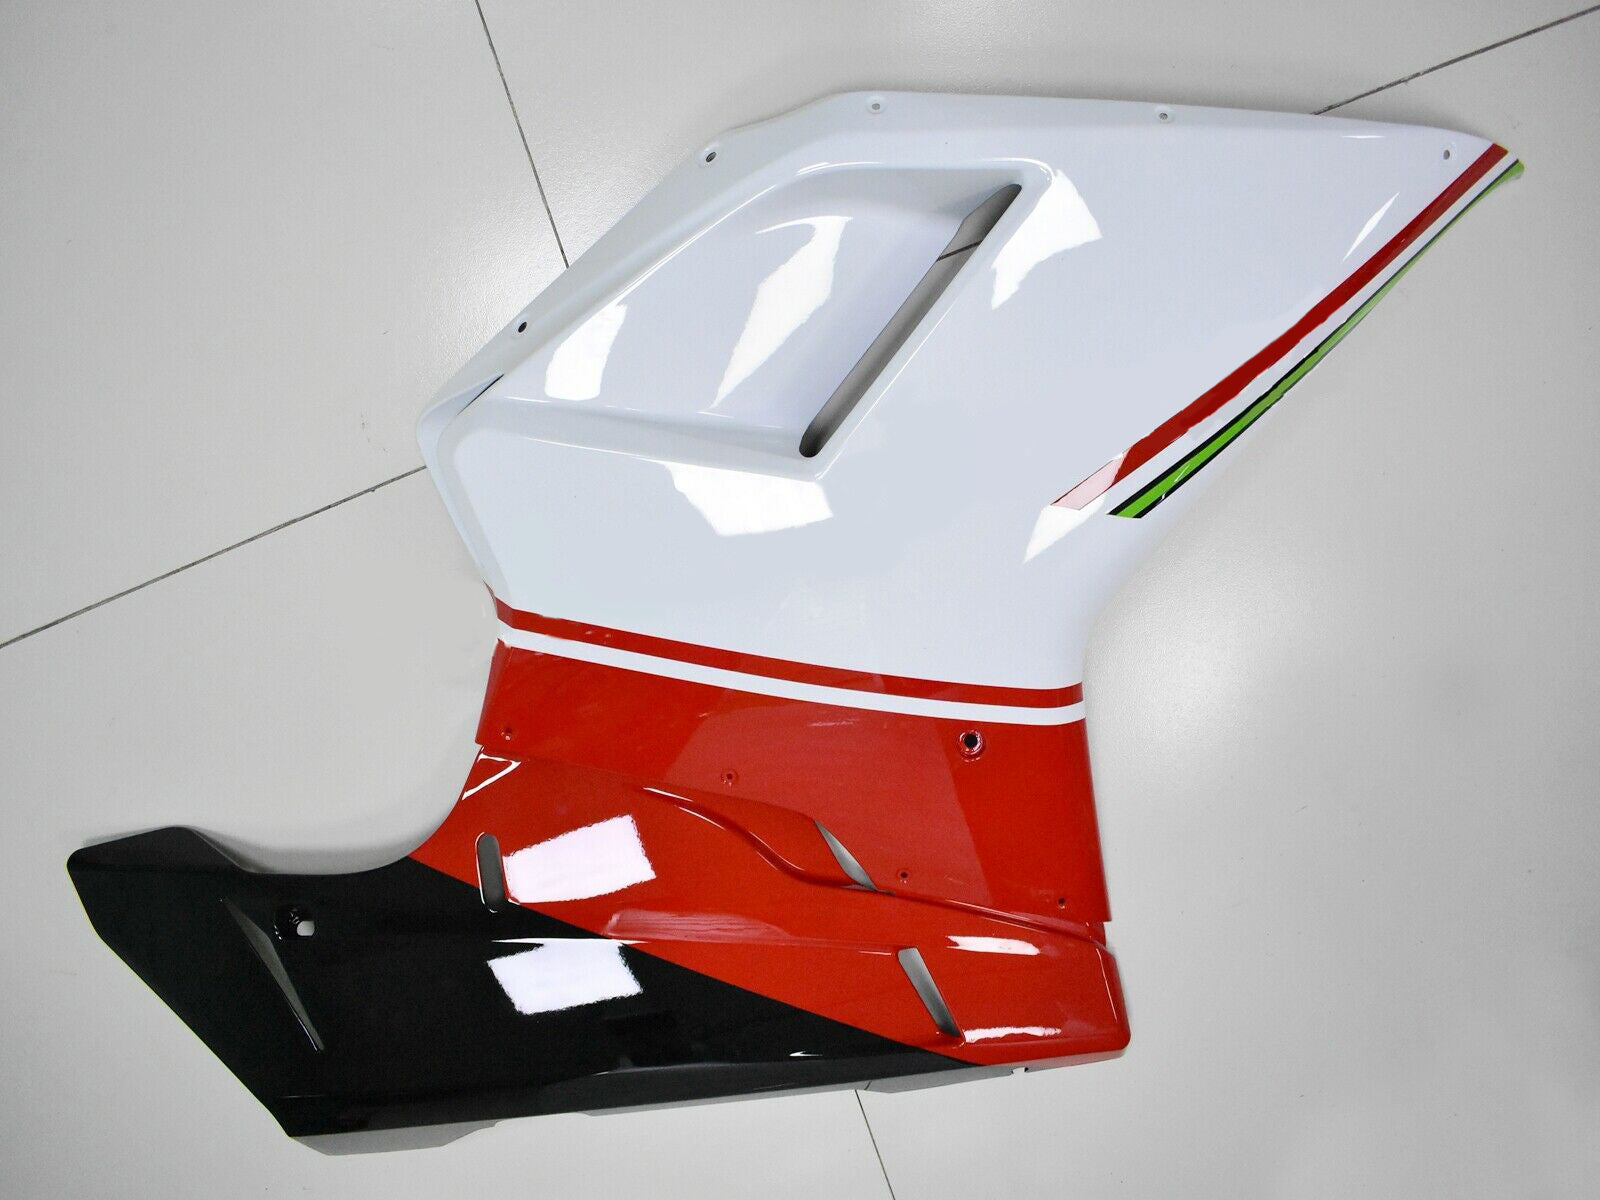 Amotopart Carénage Kit Carrosserie ABS pour Ducati 1098 1198 848 2007-2011 Générique